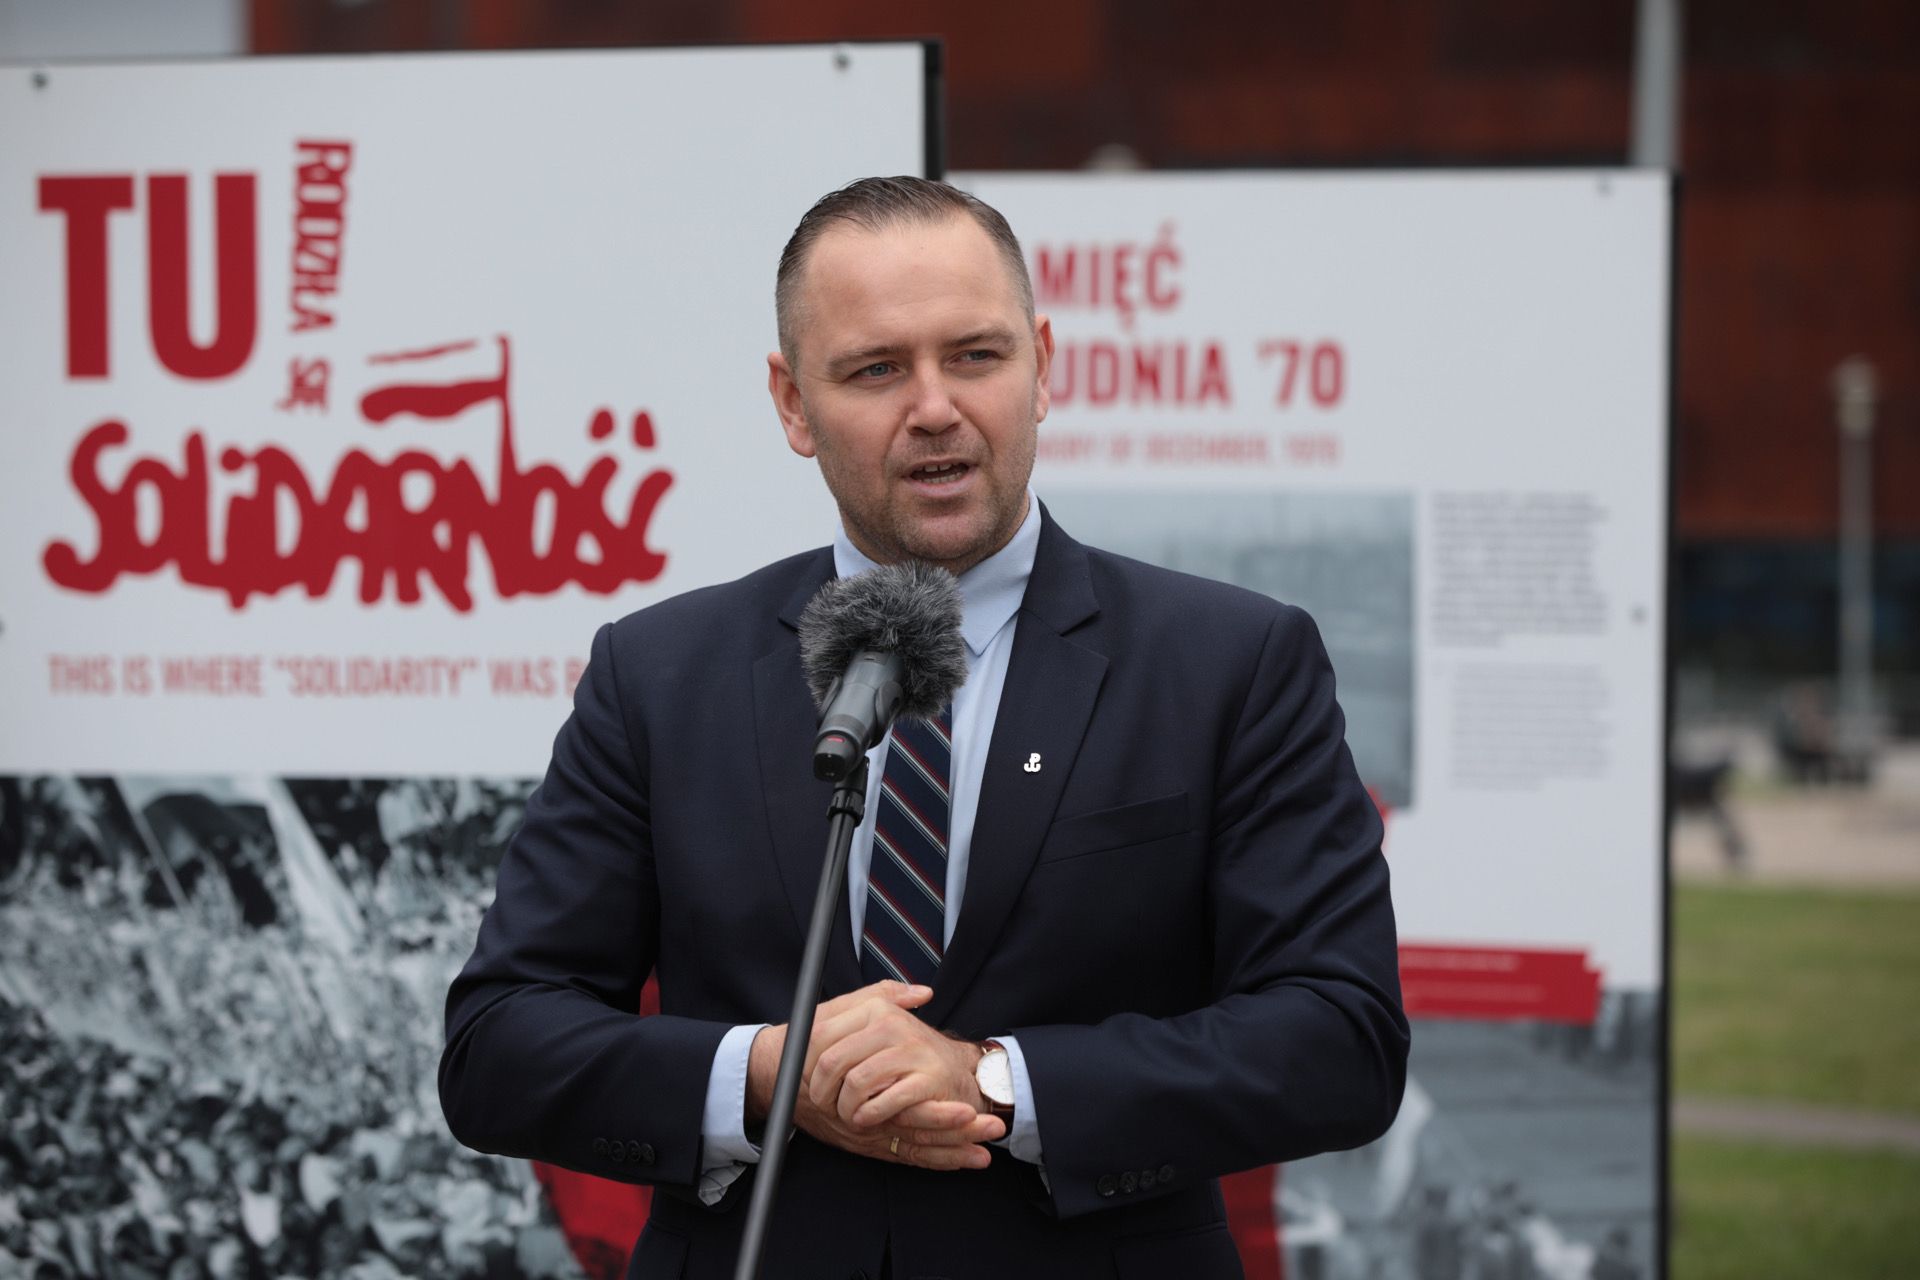 Prezes IPN dr Karol Nawrocki podczas prezentacji wystawy IPN „TU rodziła się Solidarność” na placu Solidarności w Gdańsku – 31 sierpnia 2021. Fot. Mikołaj Bujak (IPN)